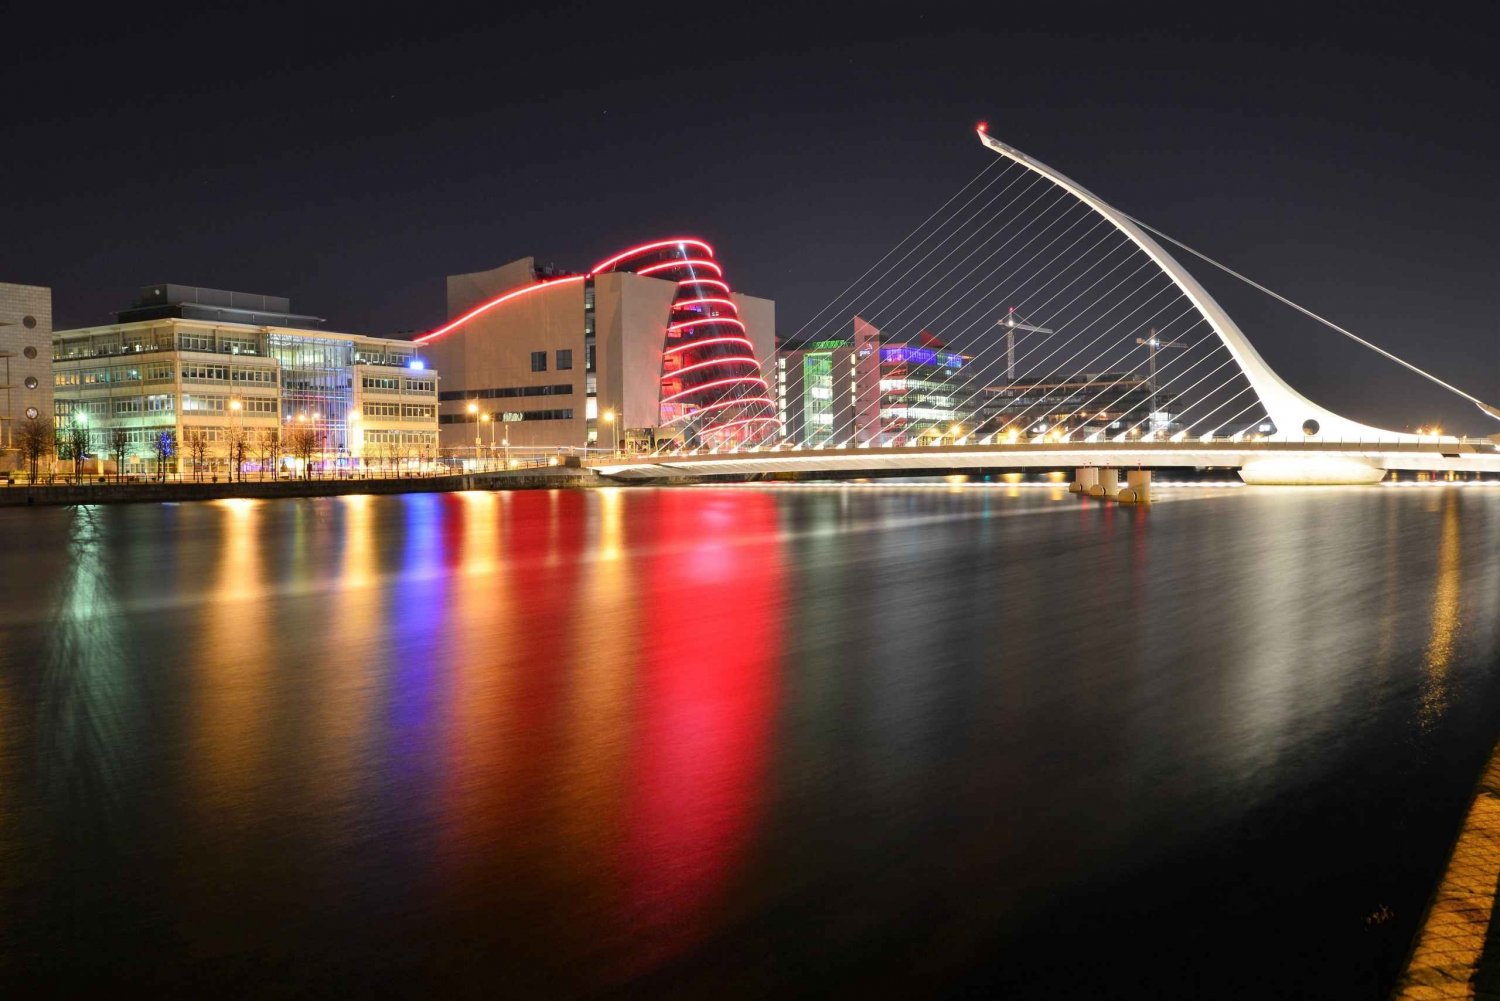 Excursão a pé por Dublin: Os 10 principais destaques